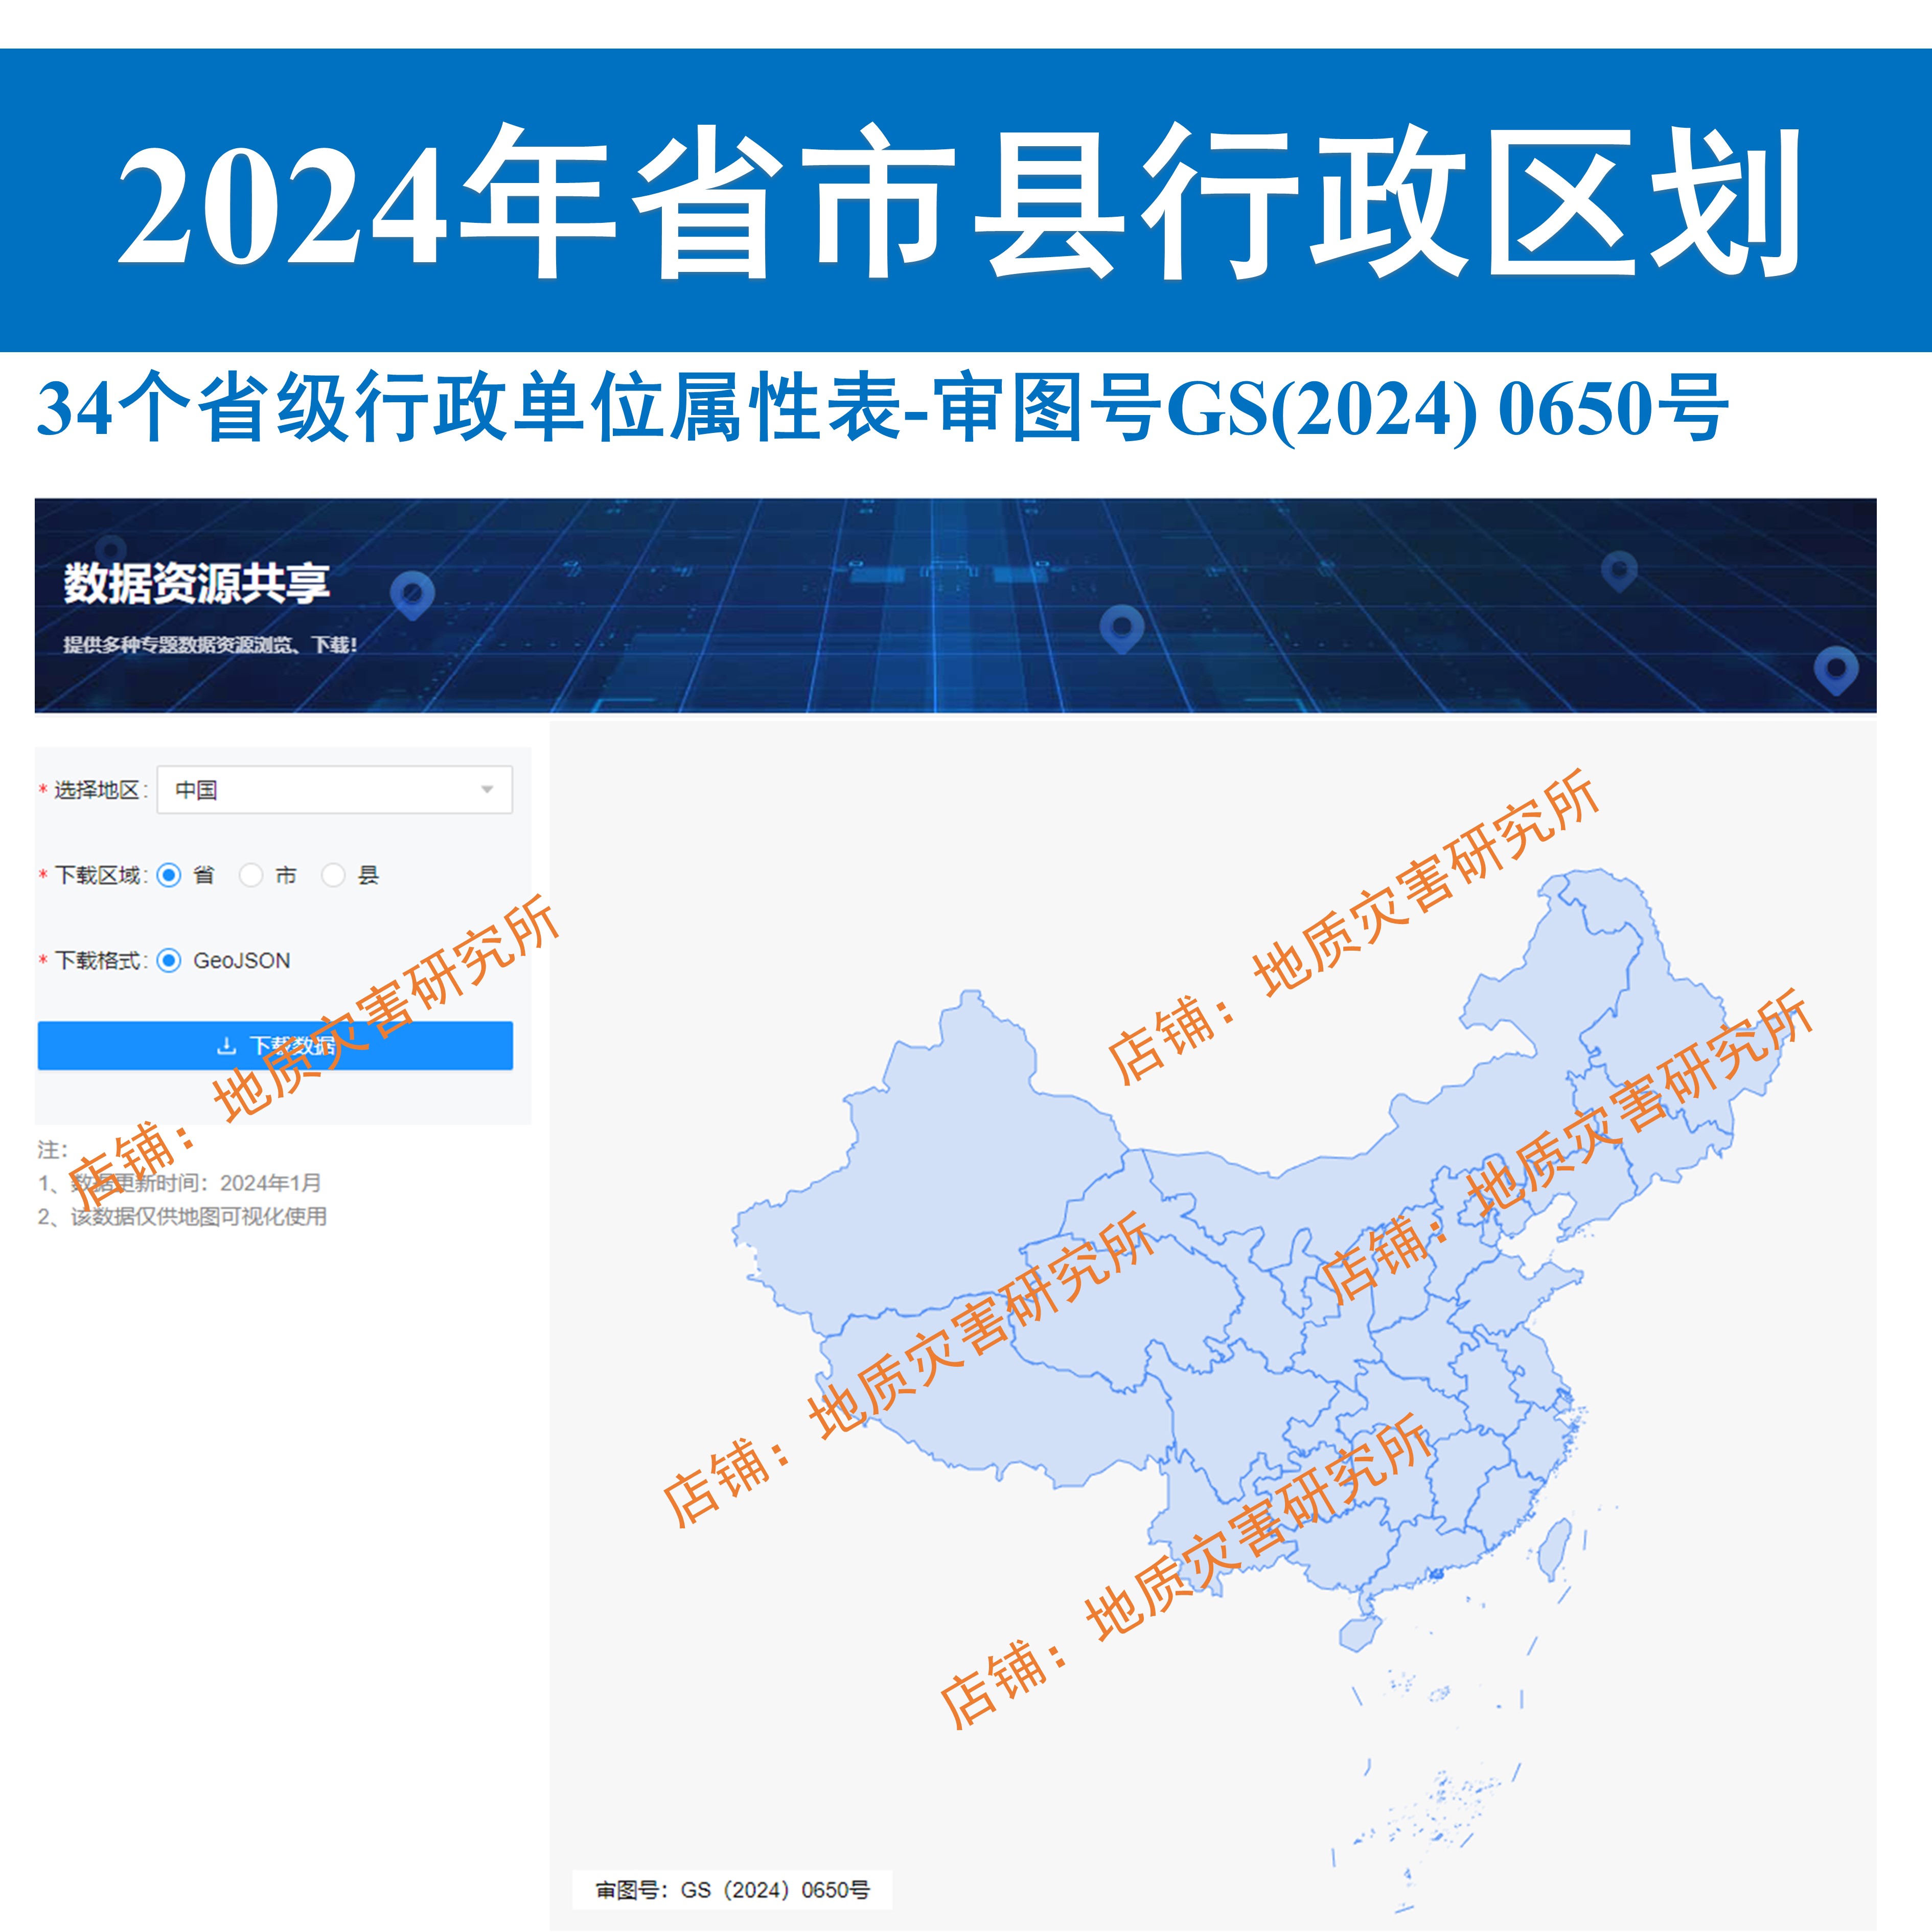 2024年最新全国省市区县行政区划边界shp矢量国家基础地理数据 - 图1